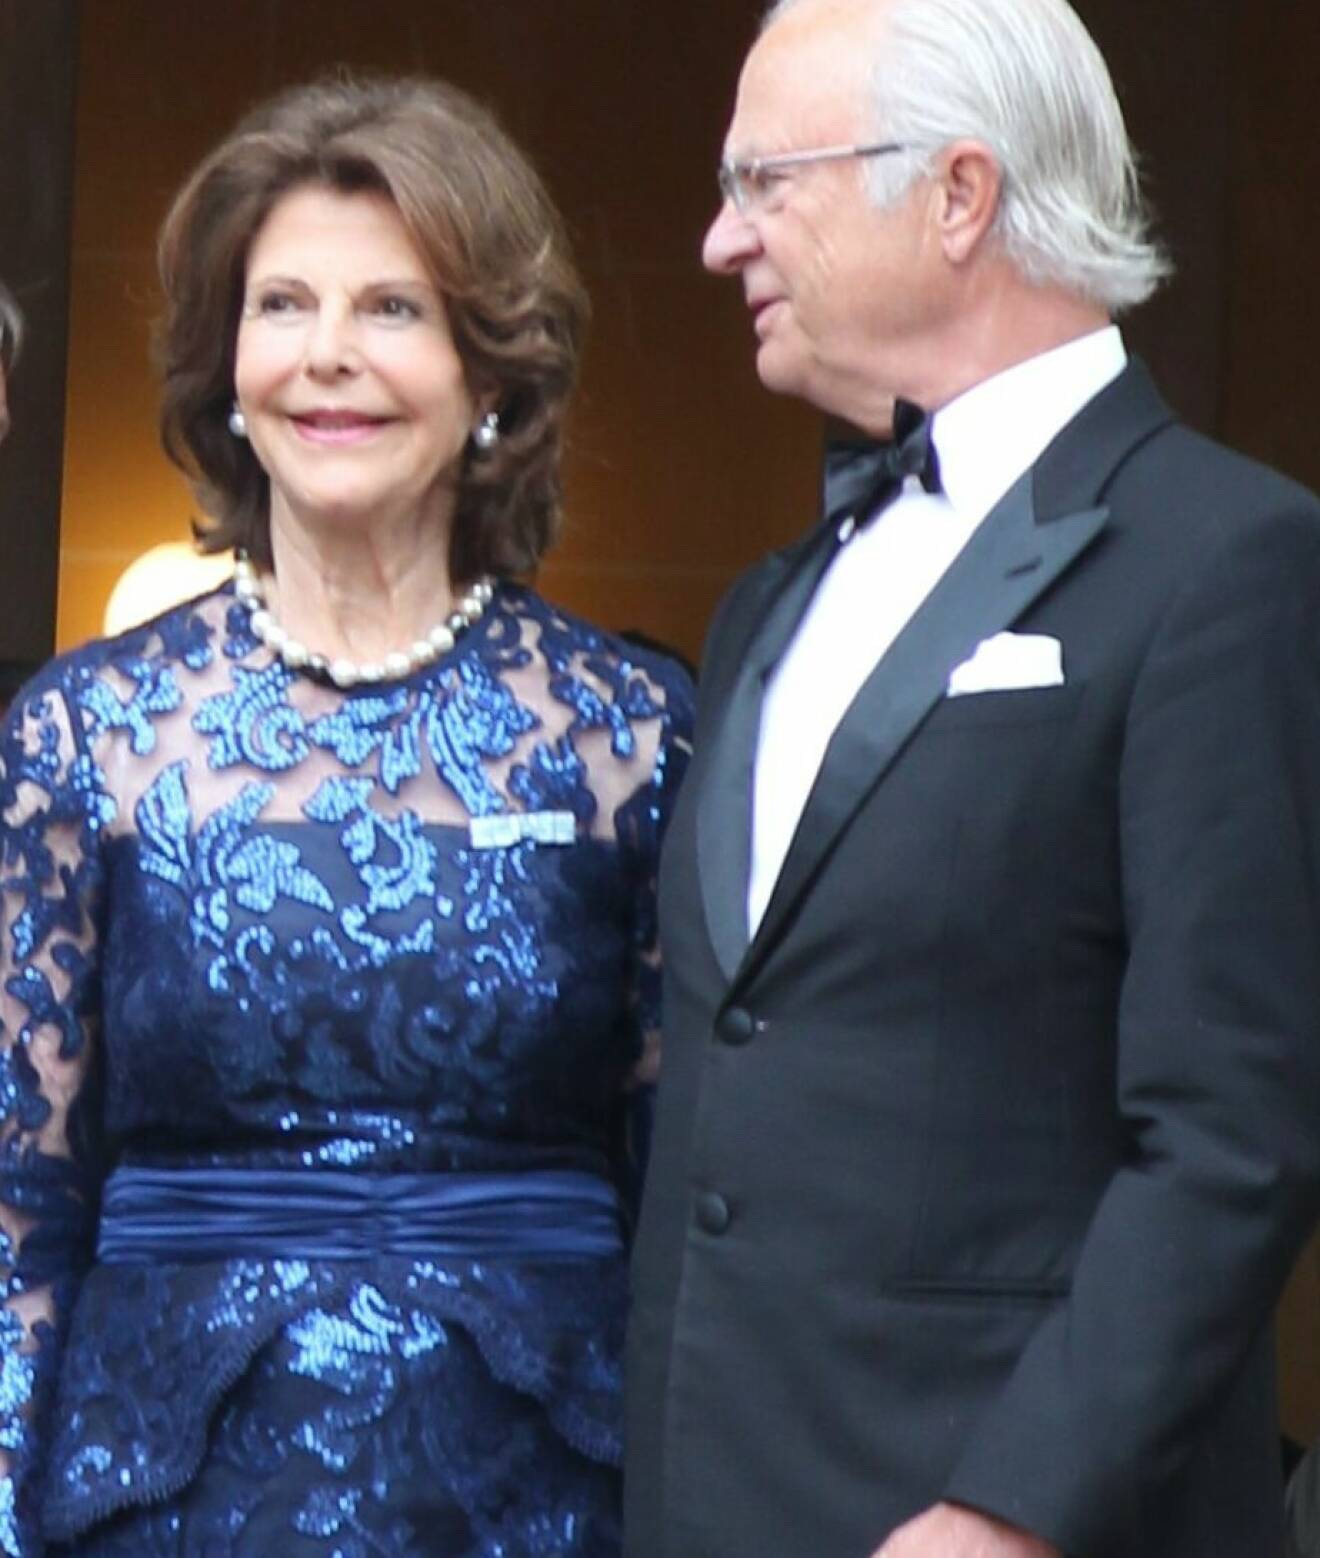 Drottning Silvia i en blå paljettklänning från Camilla Thulin. Kungen i smoking.